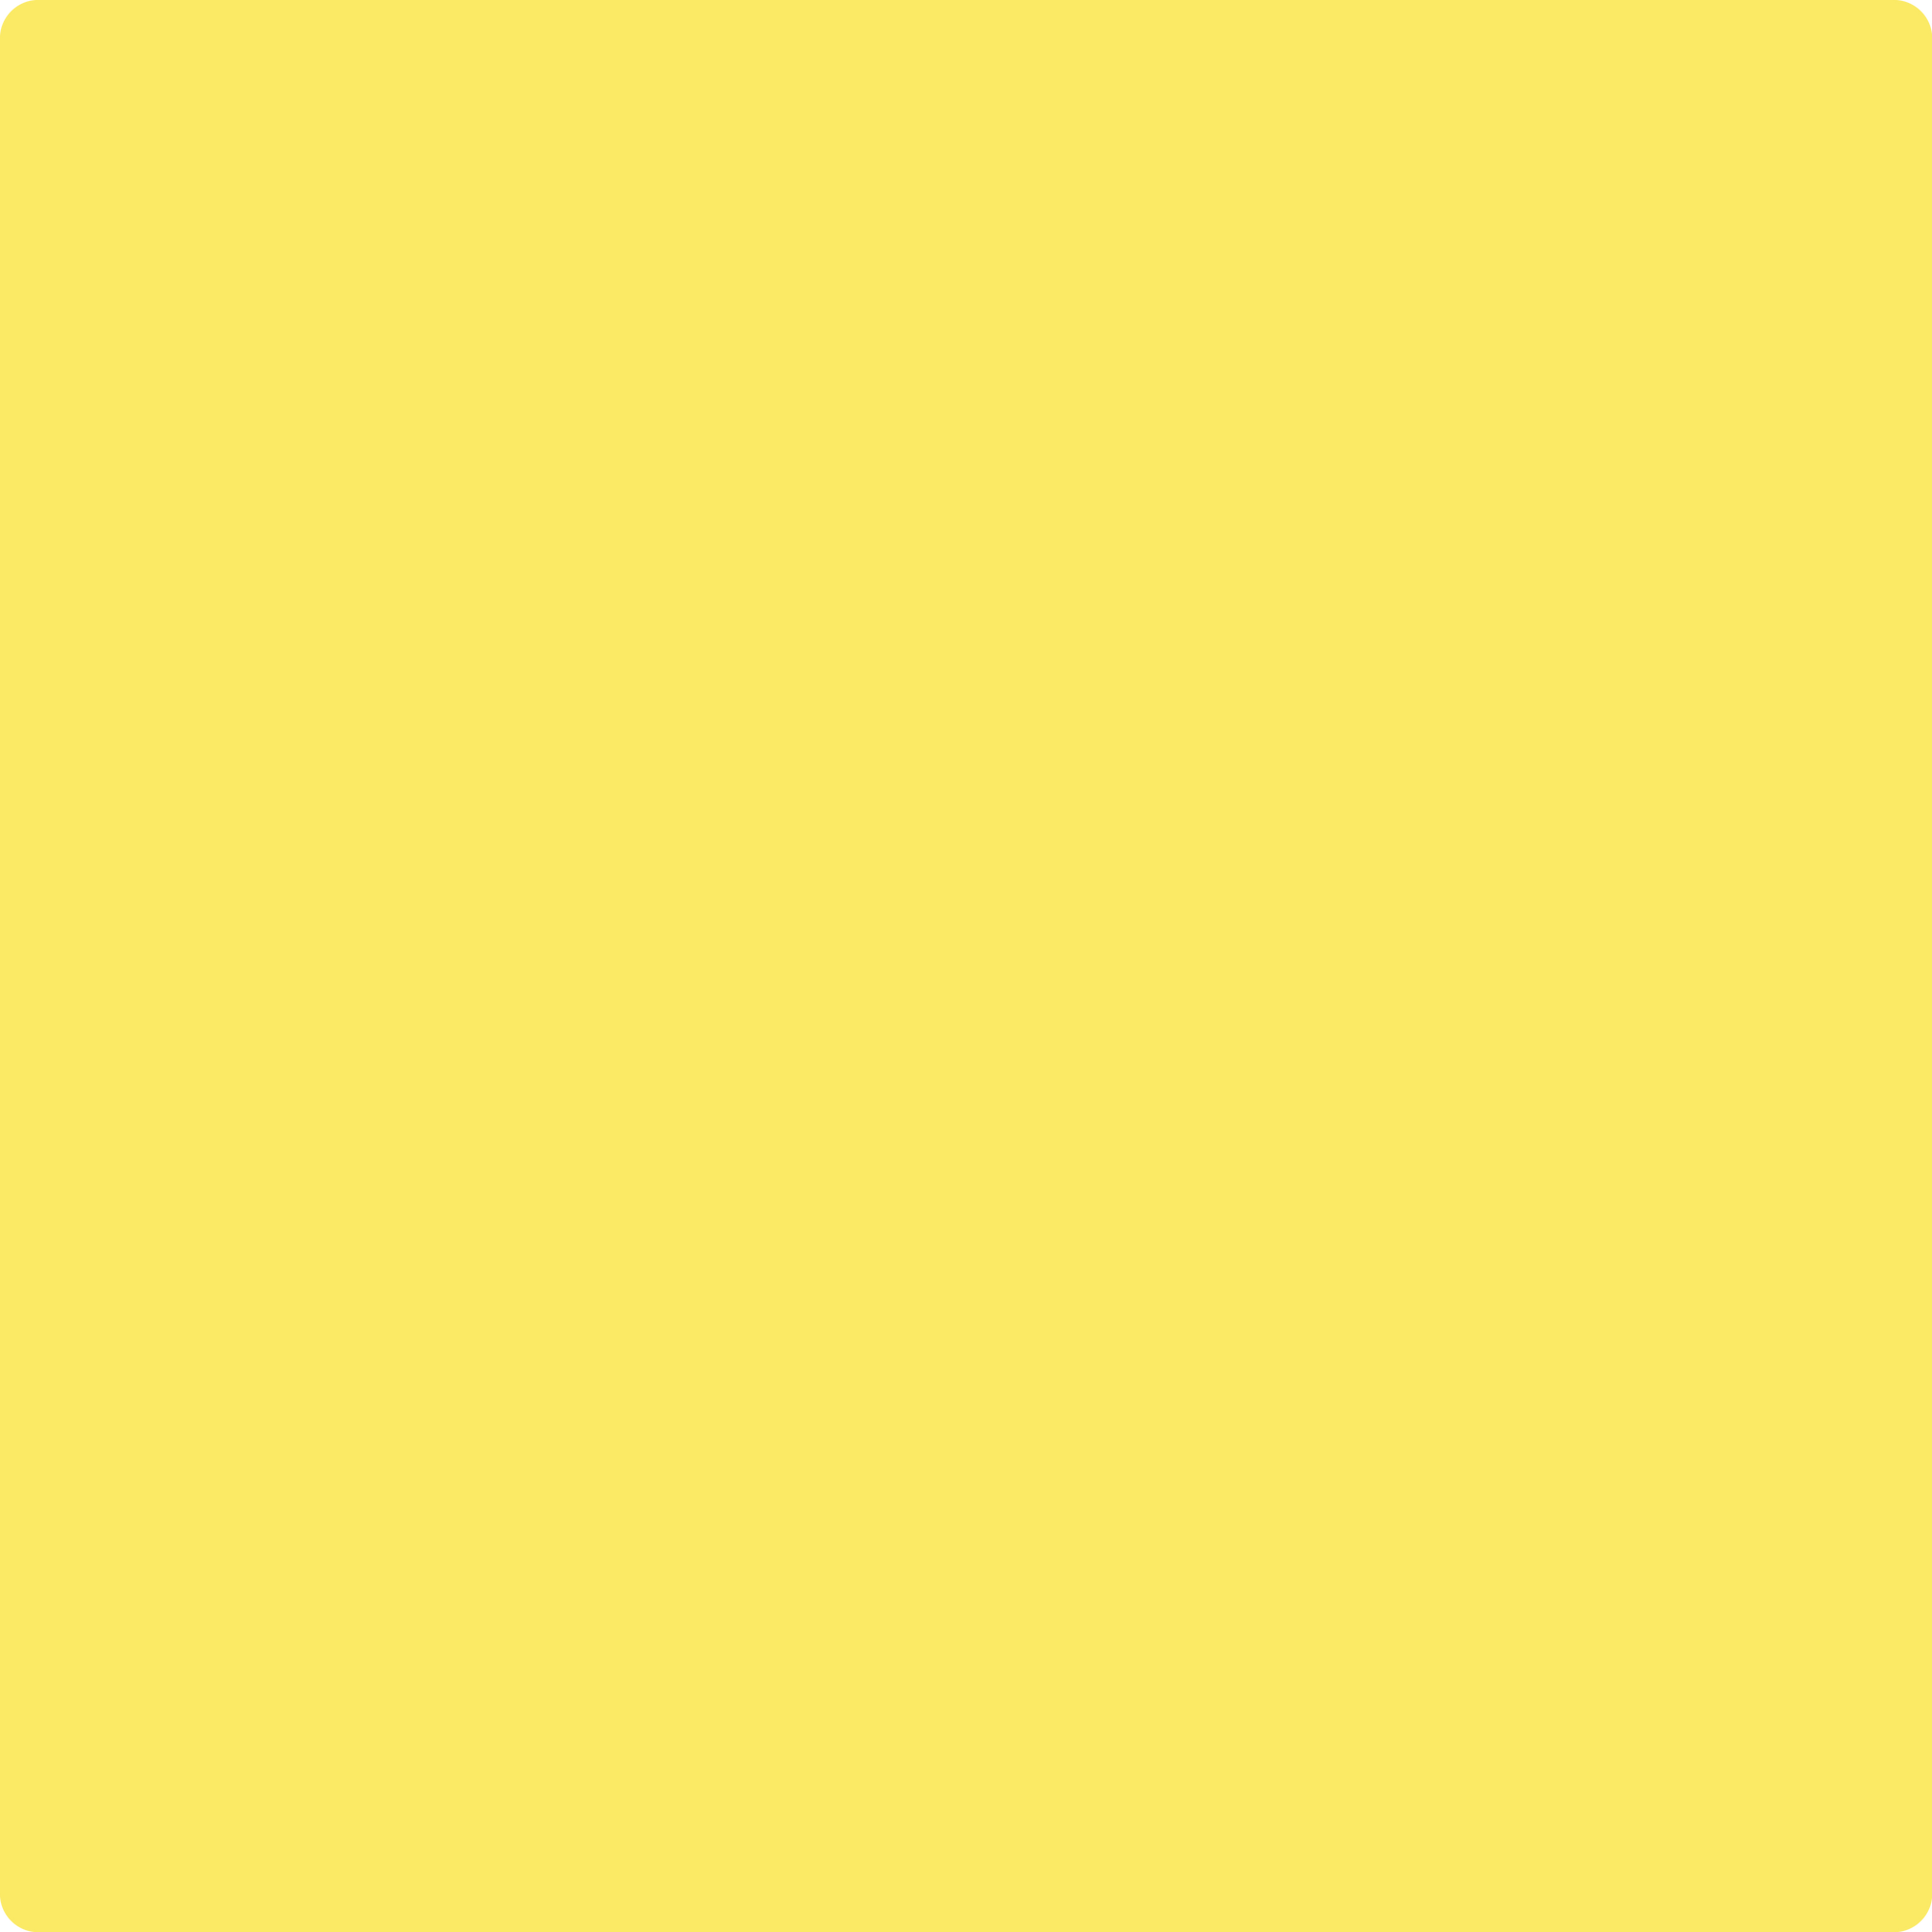 Banana Yellow - màu vàng chuối: Màu vàng chuối có sắc màu tươi sáng và rực rỡ, đưa ta đến những hành trình đầy màu sắc. Hình ảnh liên quan sẽ mang đến cho bạn hơi thở mạnh mẽ và năng động, đồng thời tạo nên những điểm nhấn đặc biệt trong hình ảnh.